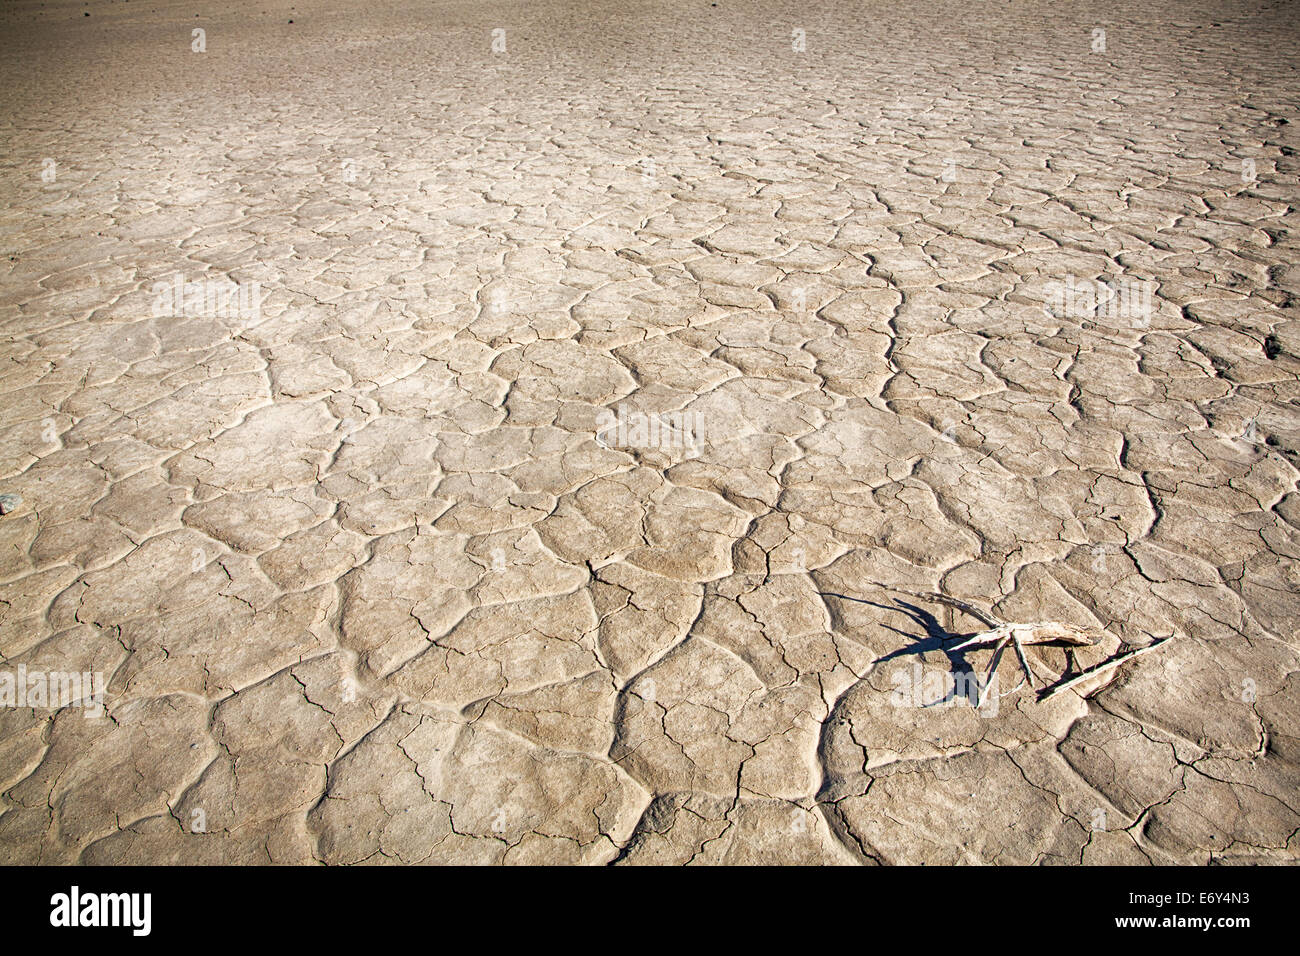 La boue fissuré sur le sol d'une vallée dans la région de Death Valley National Park. La Californie, USA Banque D'Images